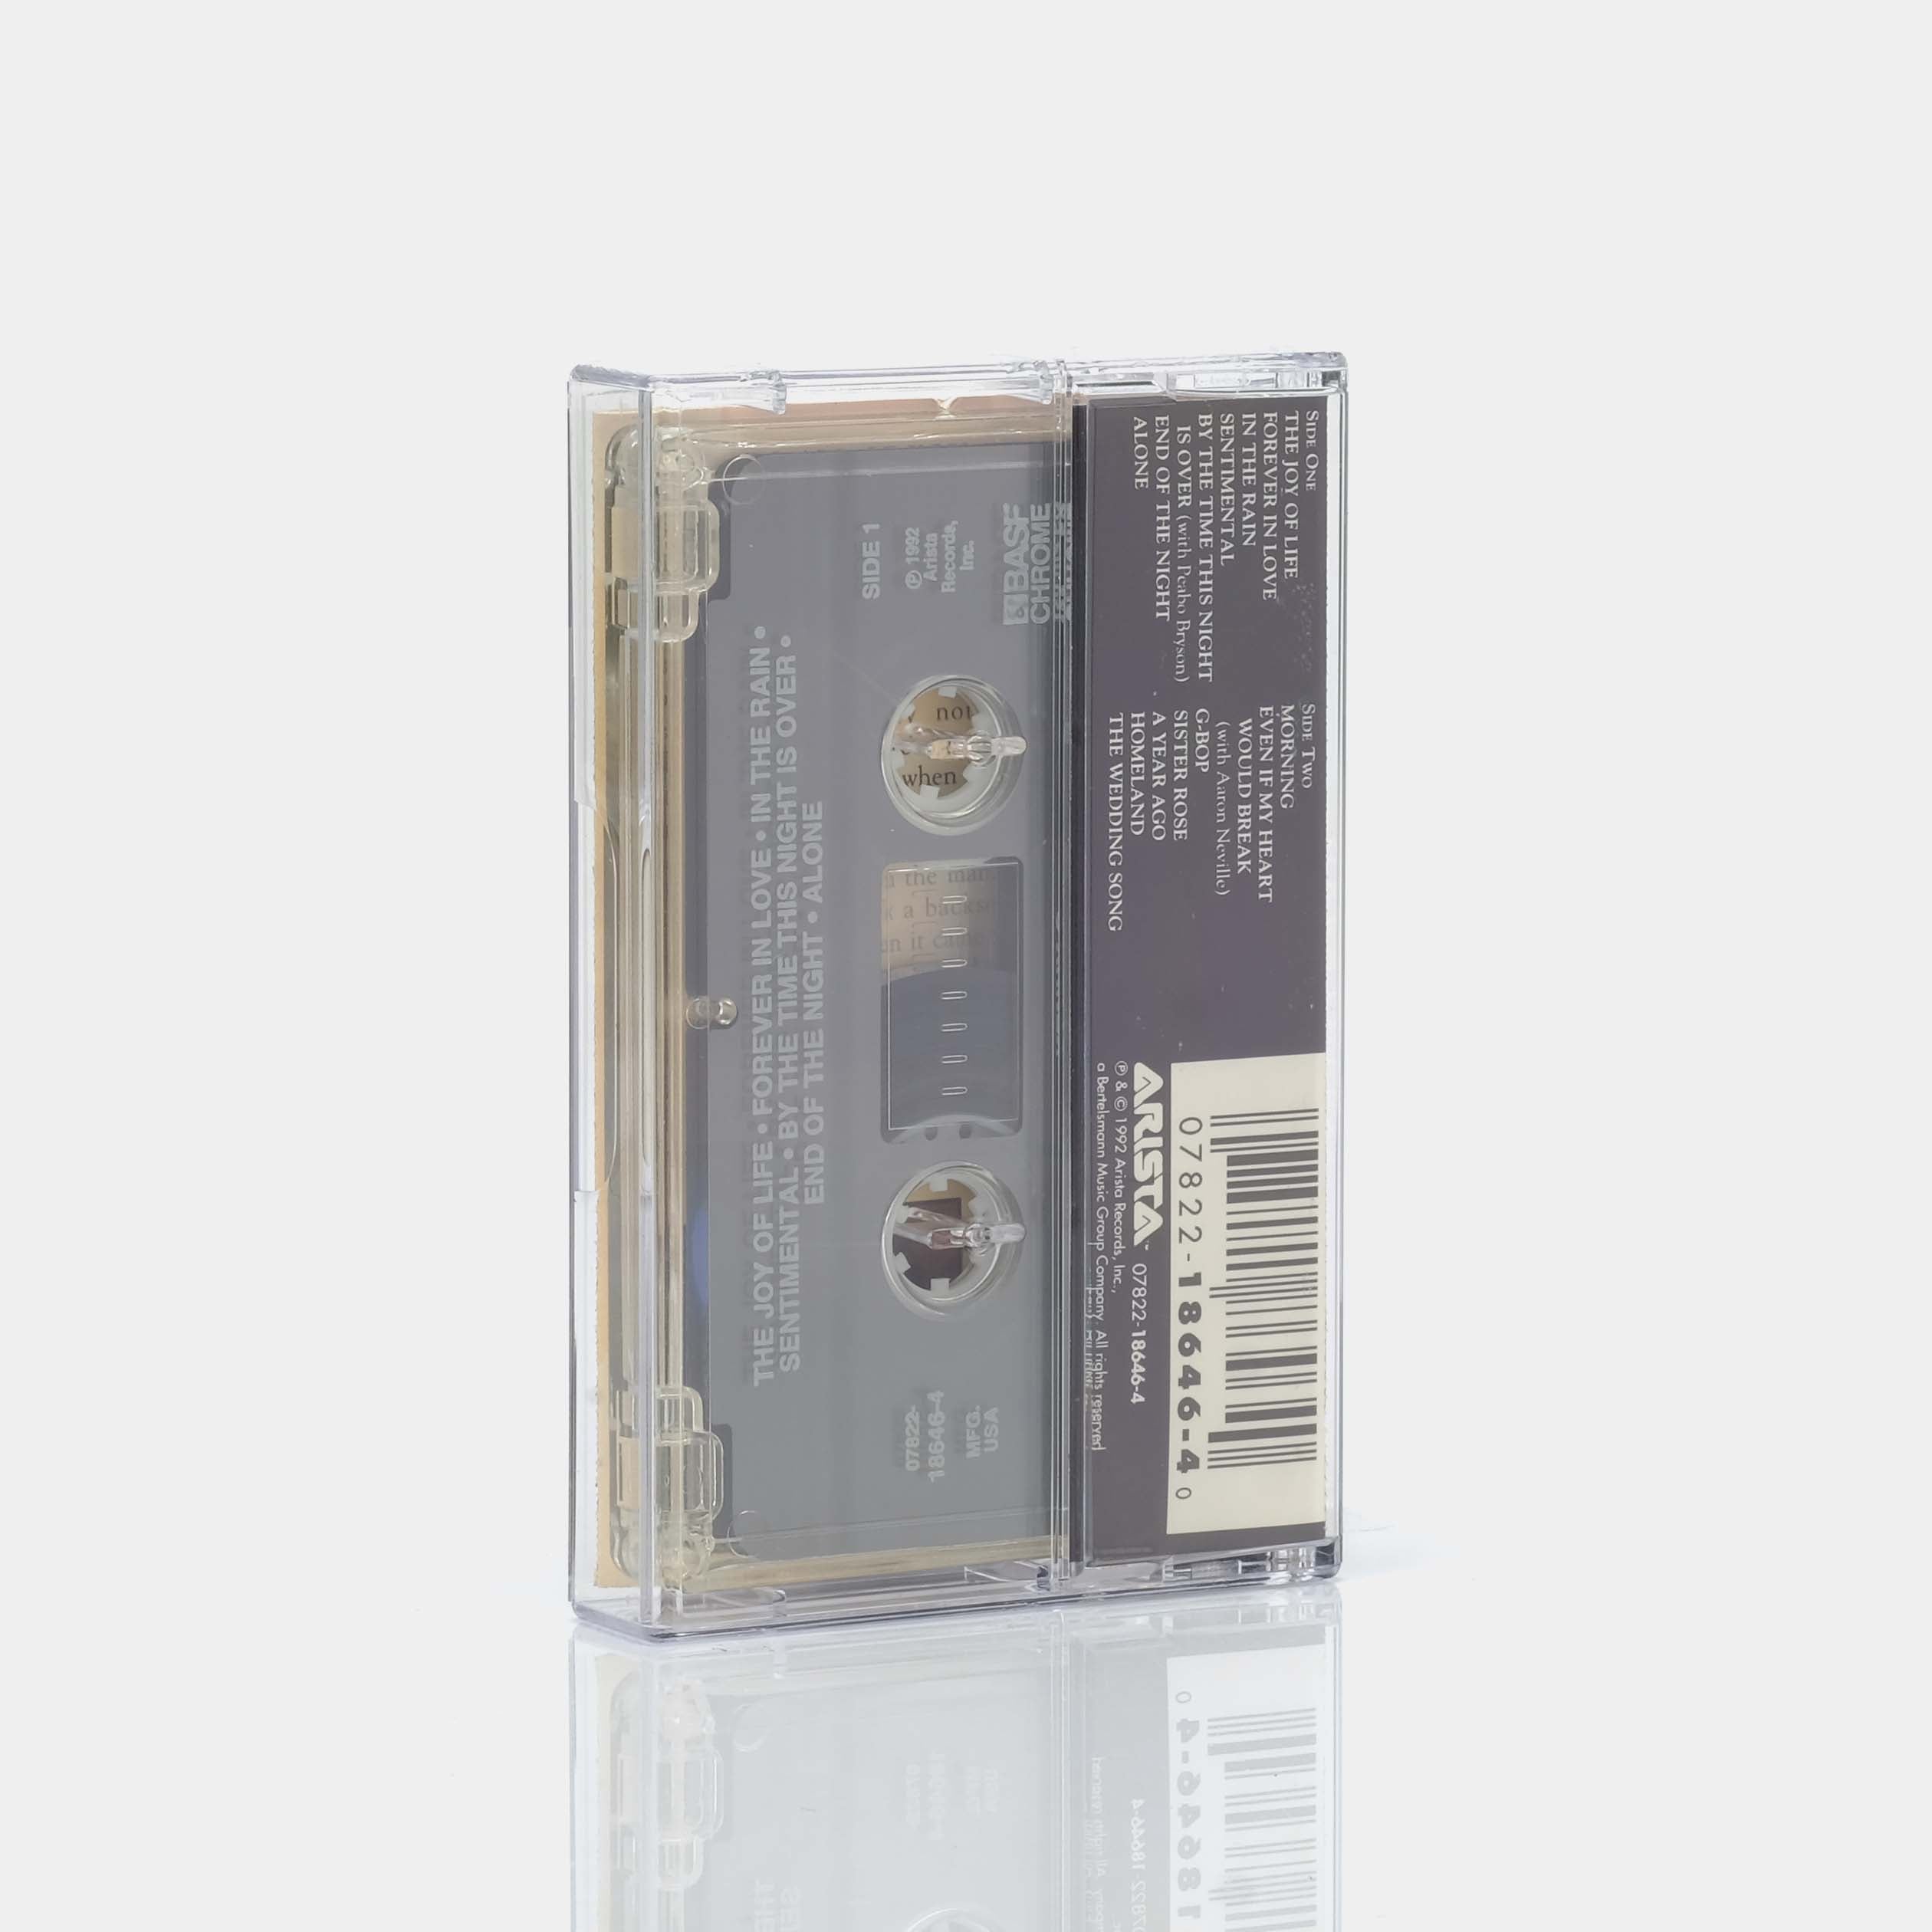 Kenny G - Breathless Cassette Tape